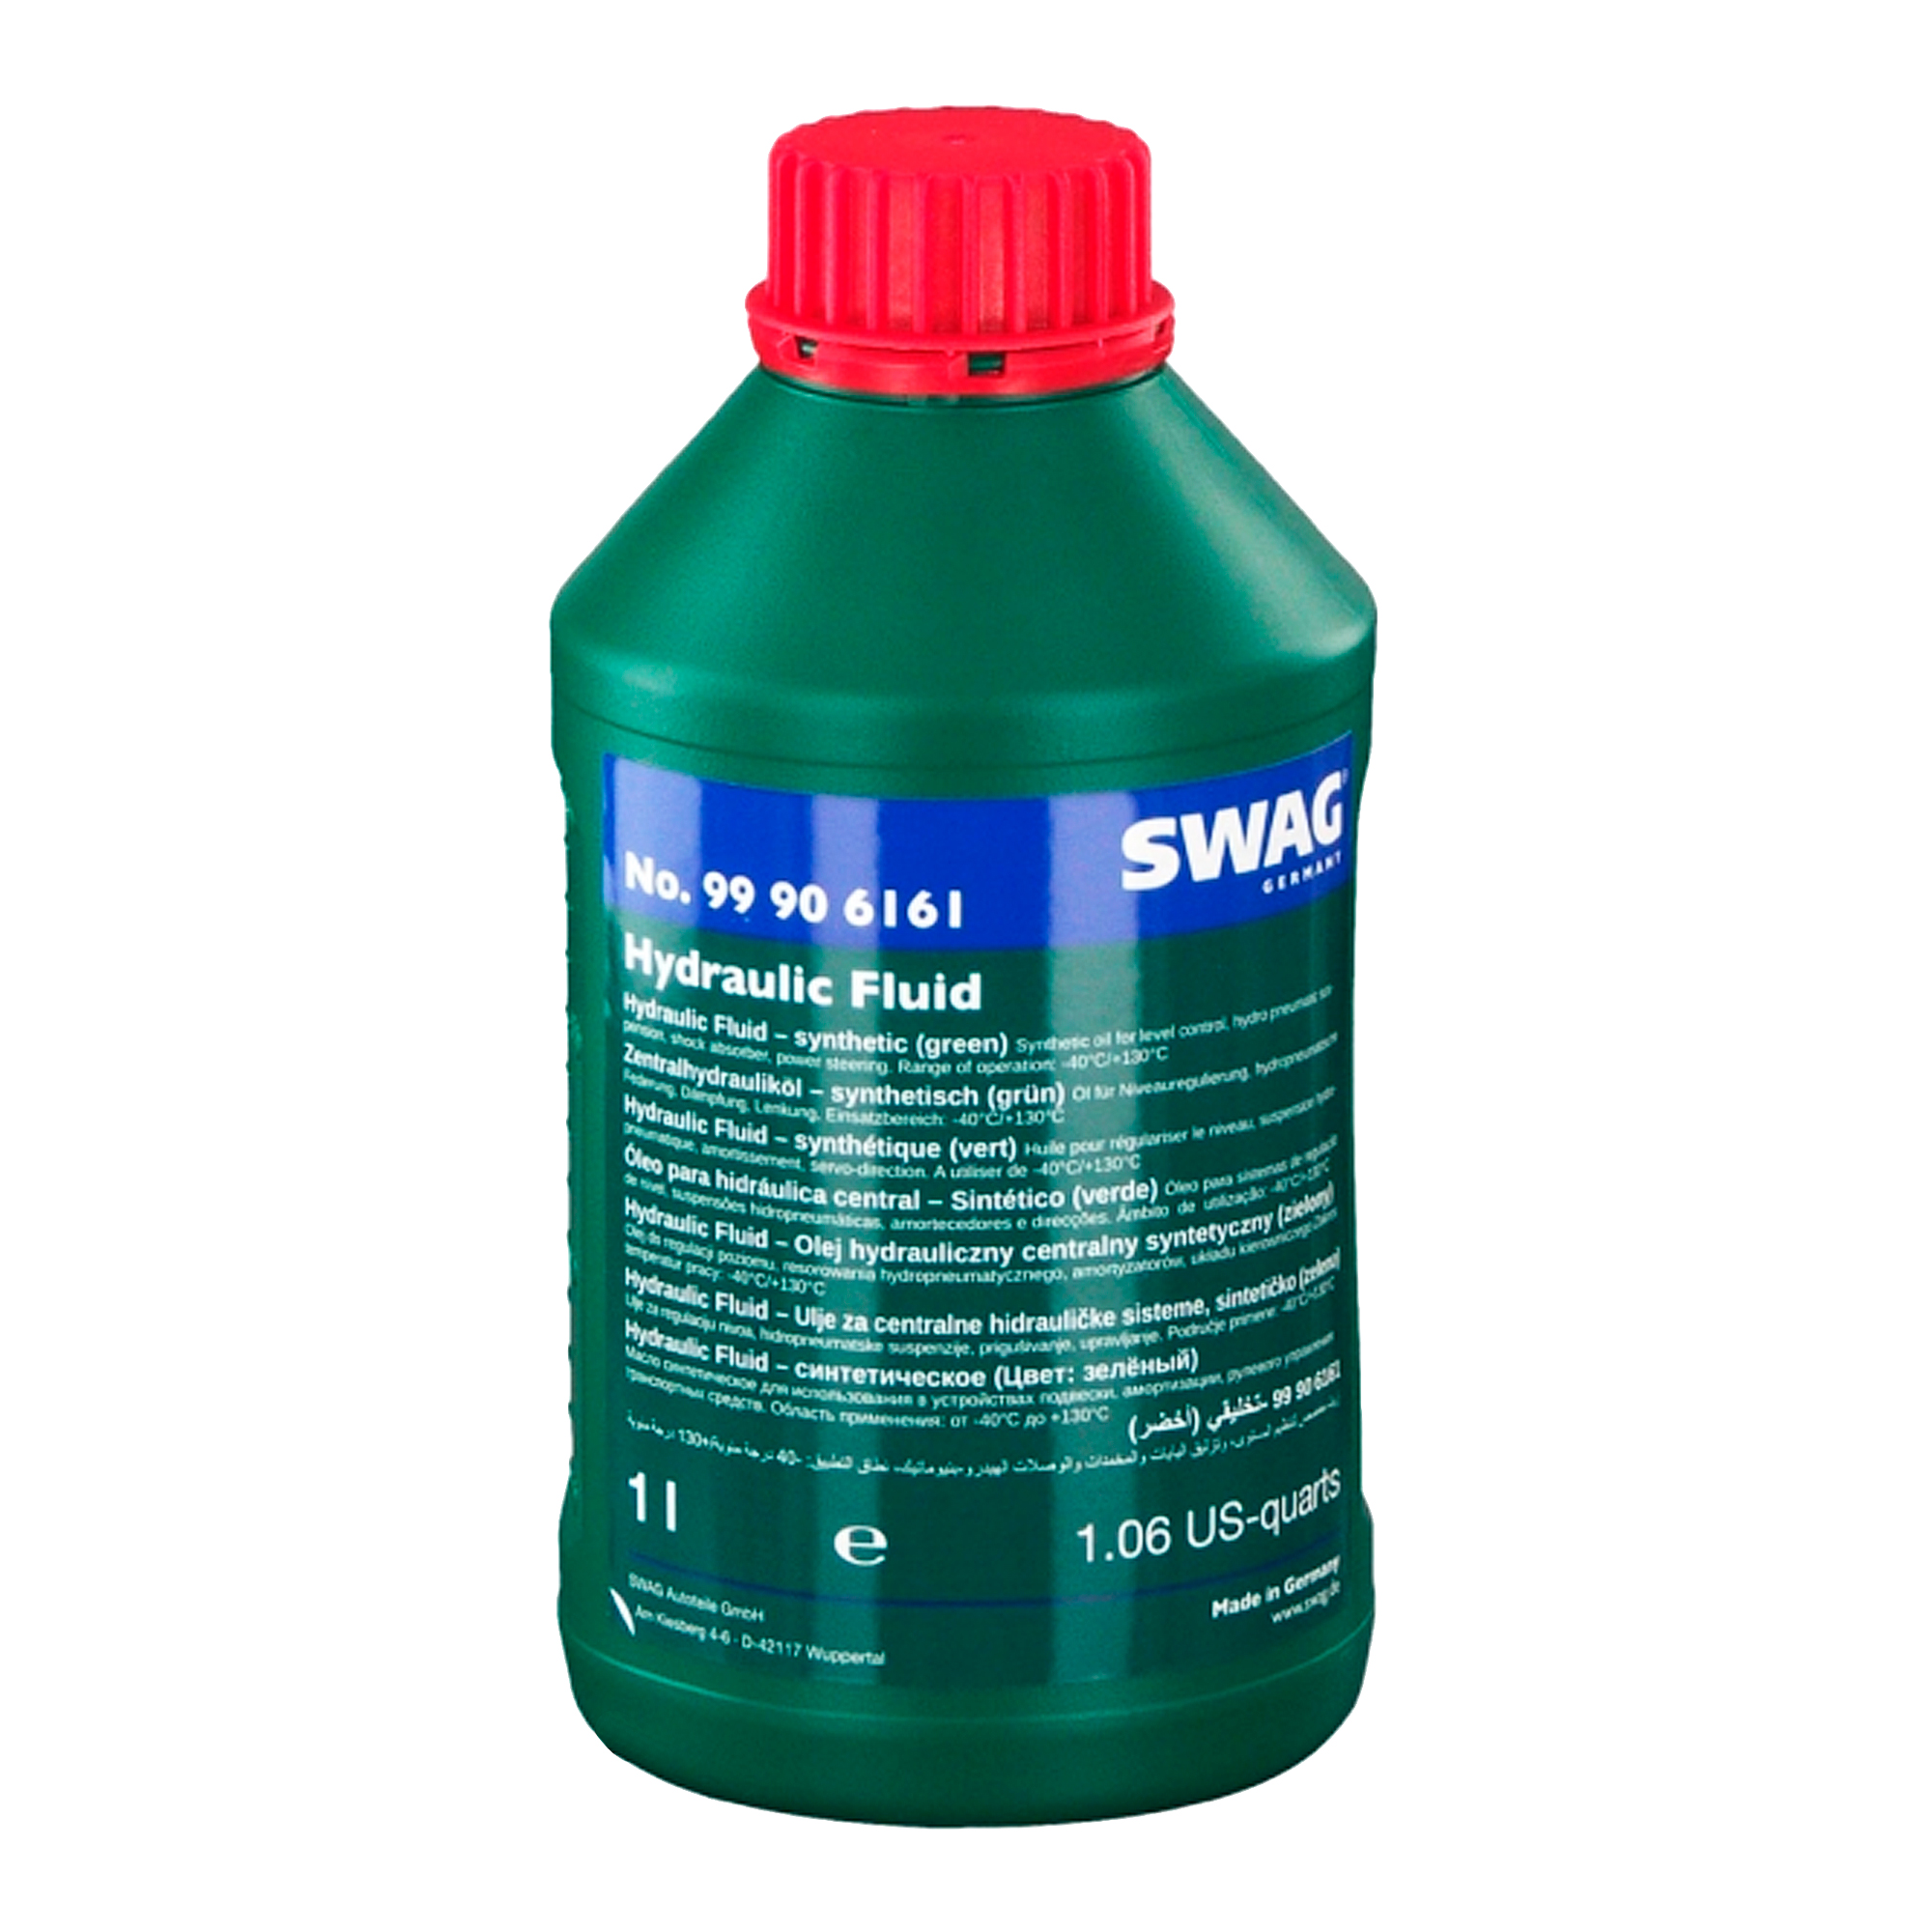 Масло гидравлическое Swag Hydraulic Fluid 1л (99 90 6161)